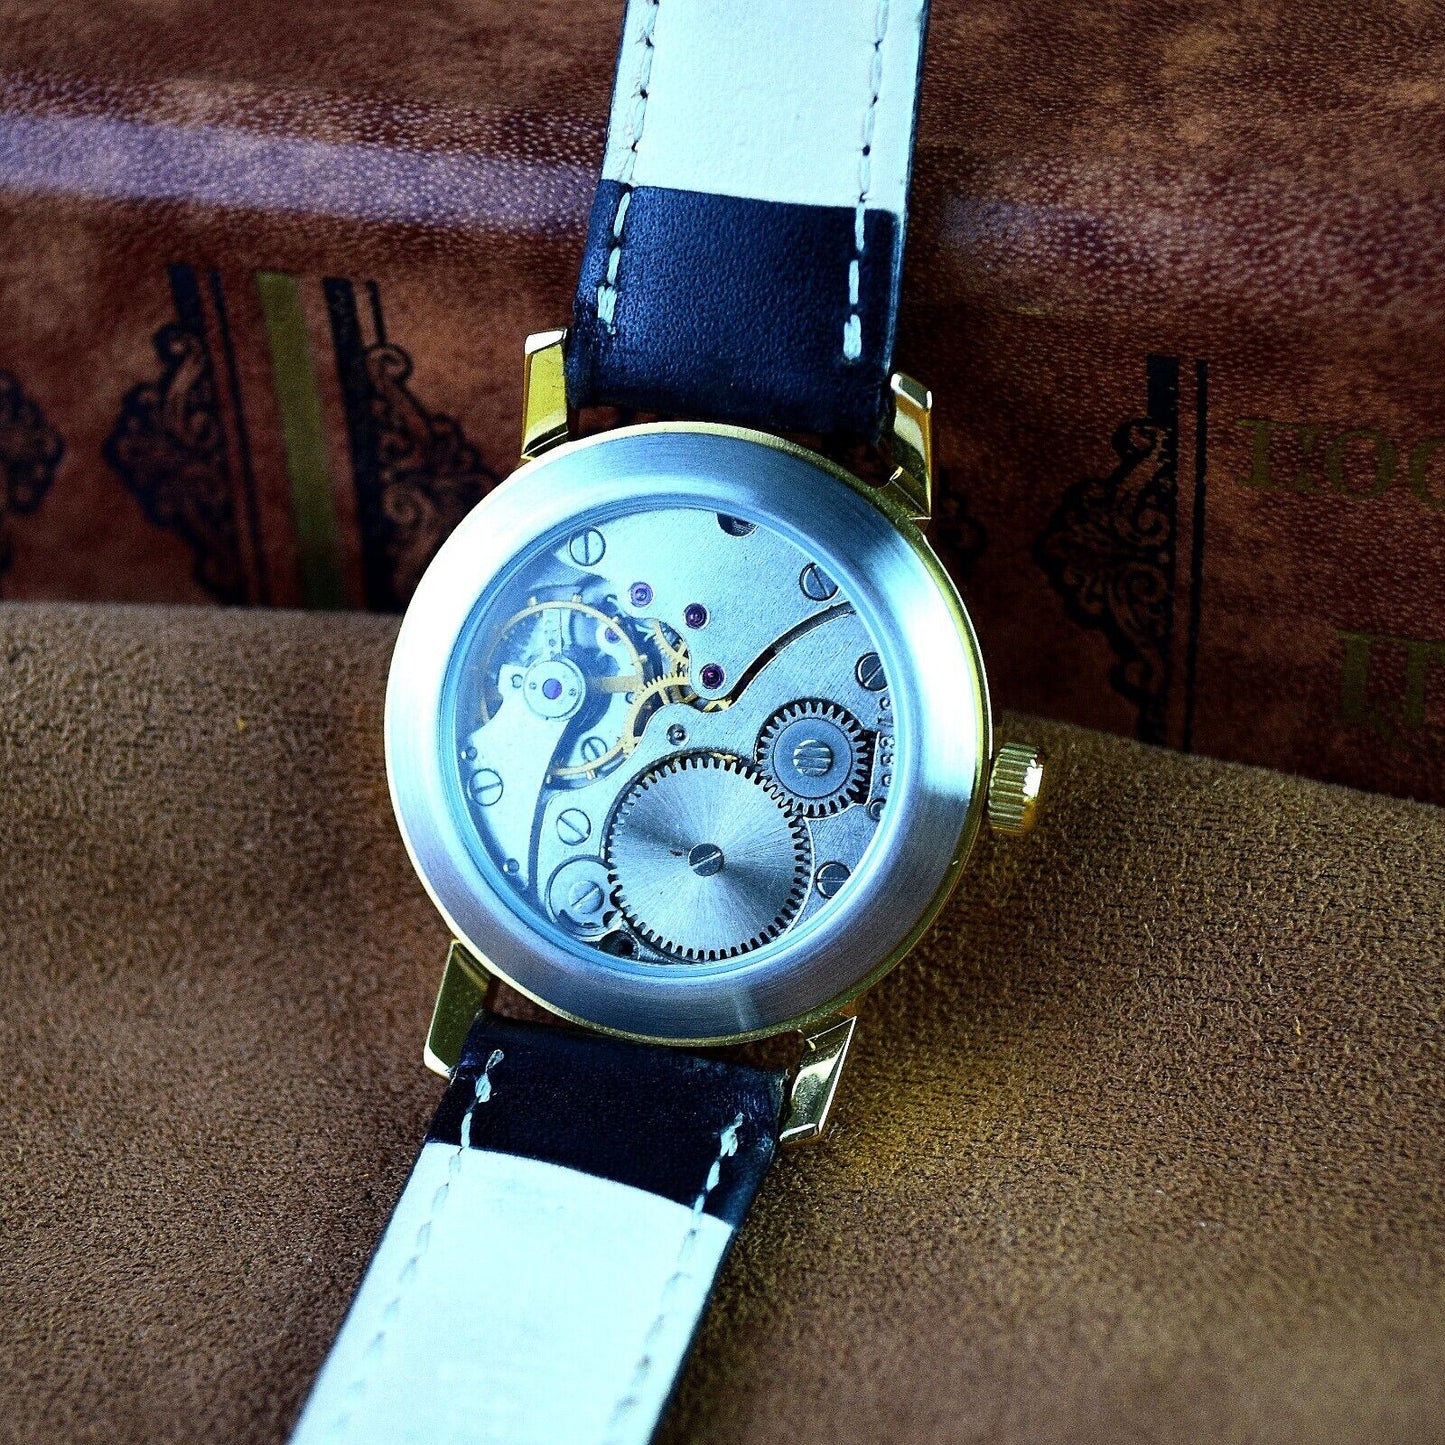 Soviet WristWatch Pobeda Space Programm Vintage Soviet Mechanical Watch USSR